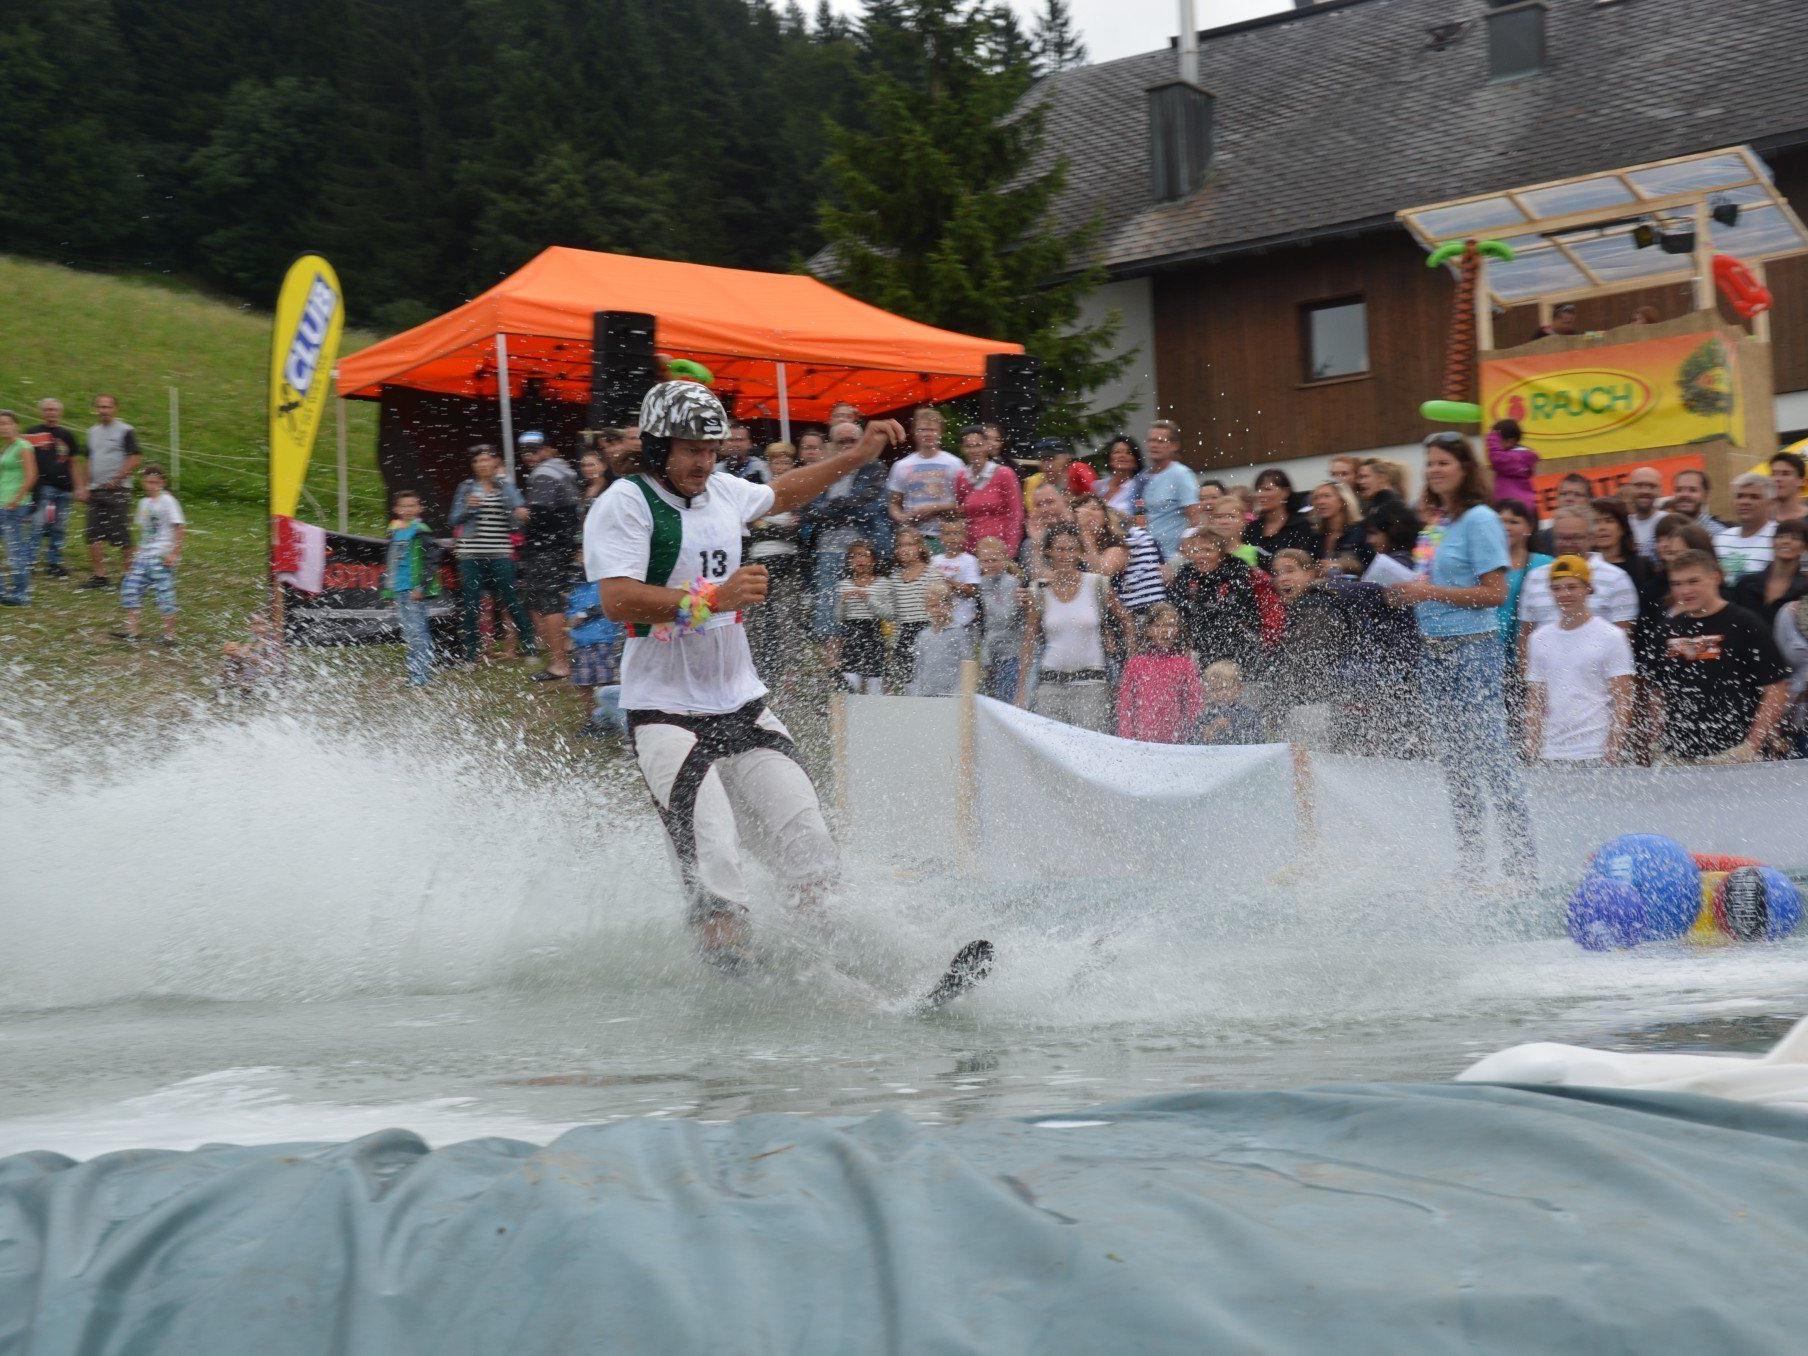 Heisse Fights um jeden Millimeter Weite beim Waterslide Festival in Furx.